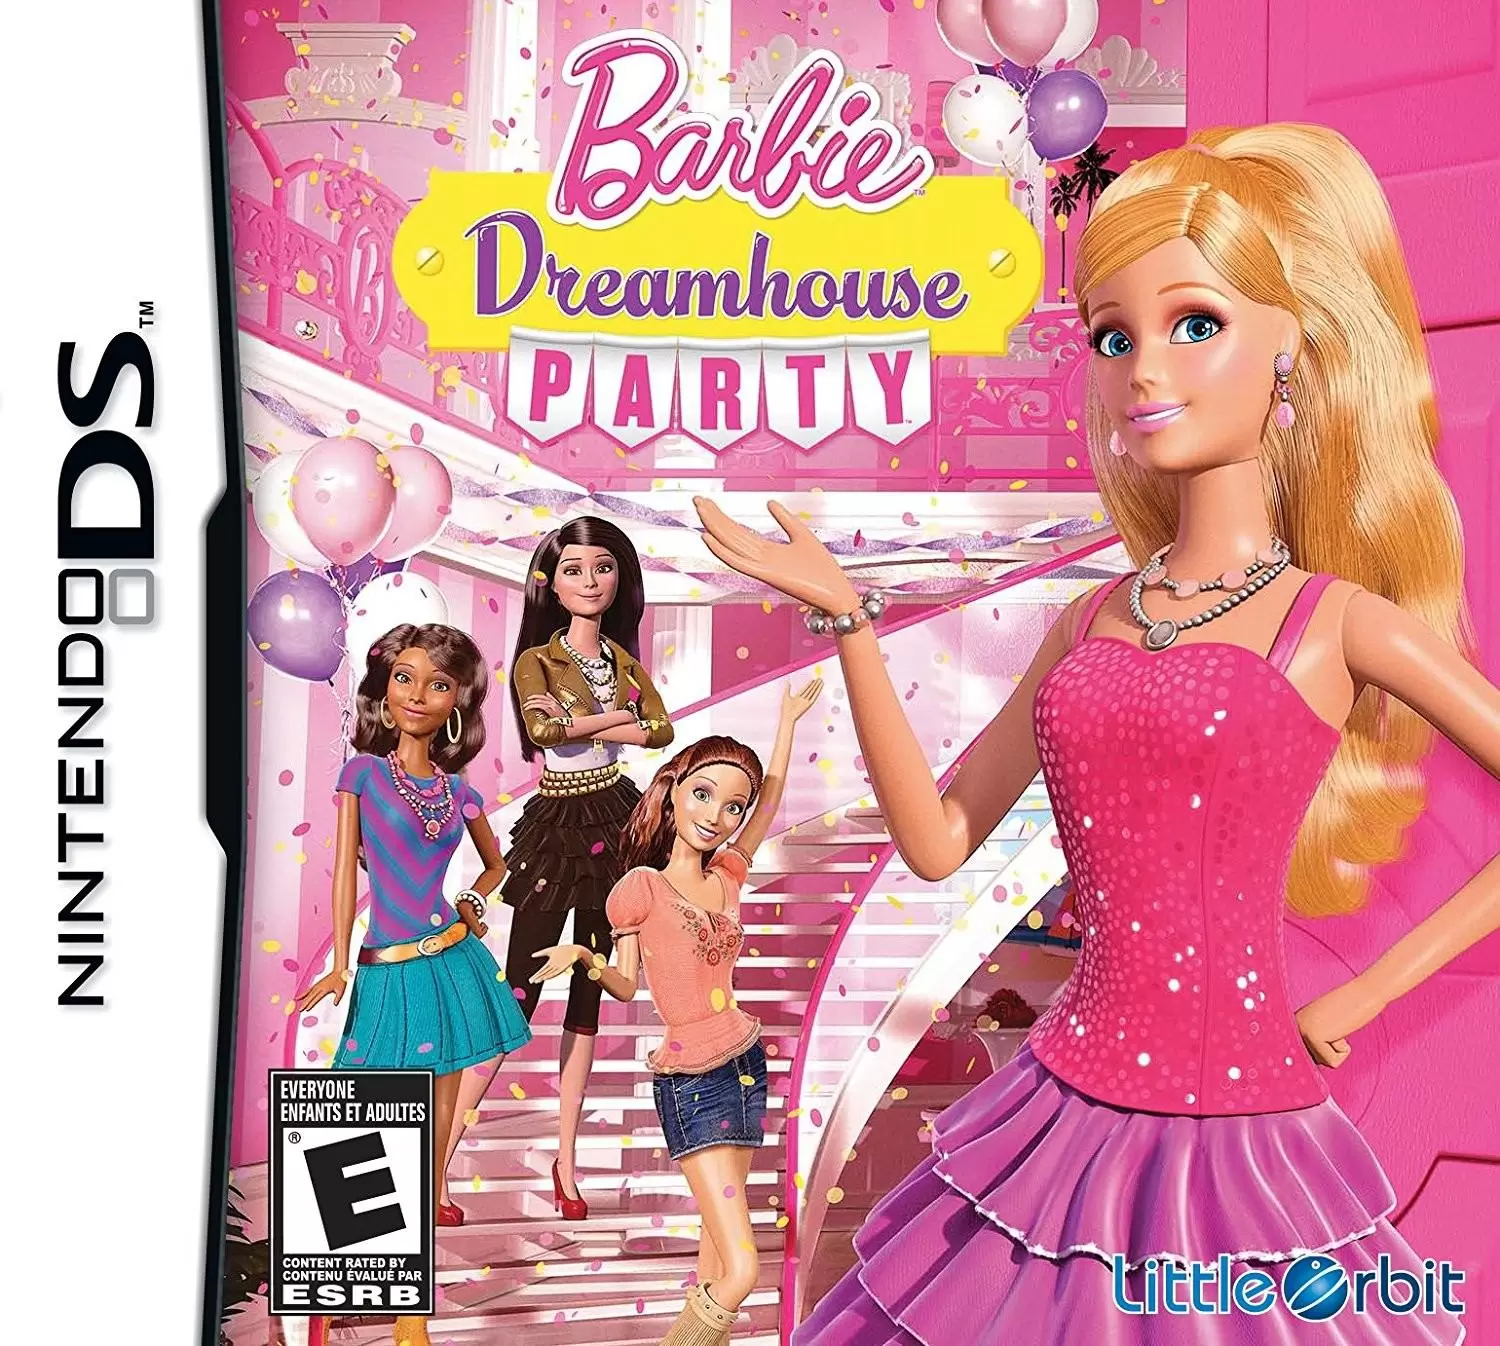 Jeux Nintendo DS - Barbie Dreamhouse Party